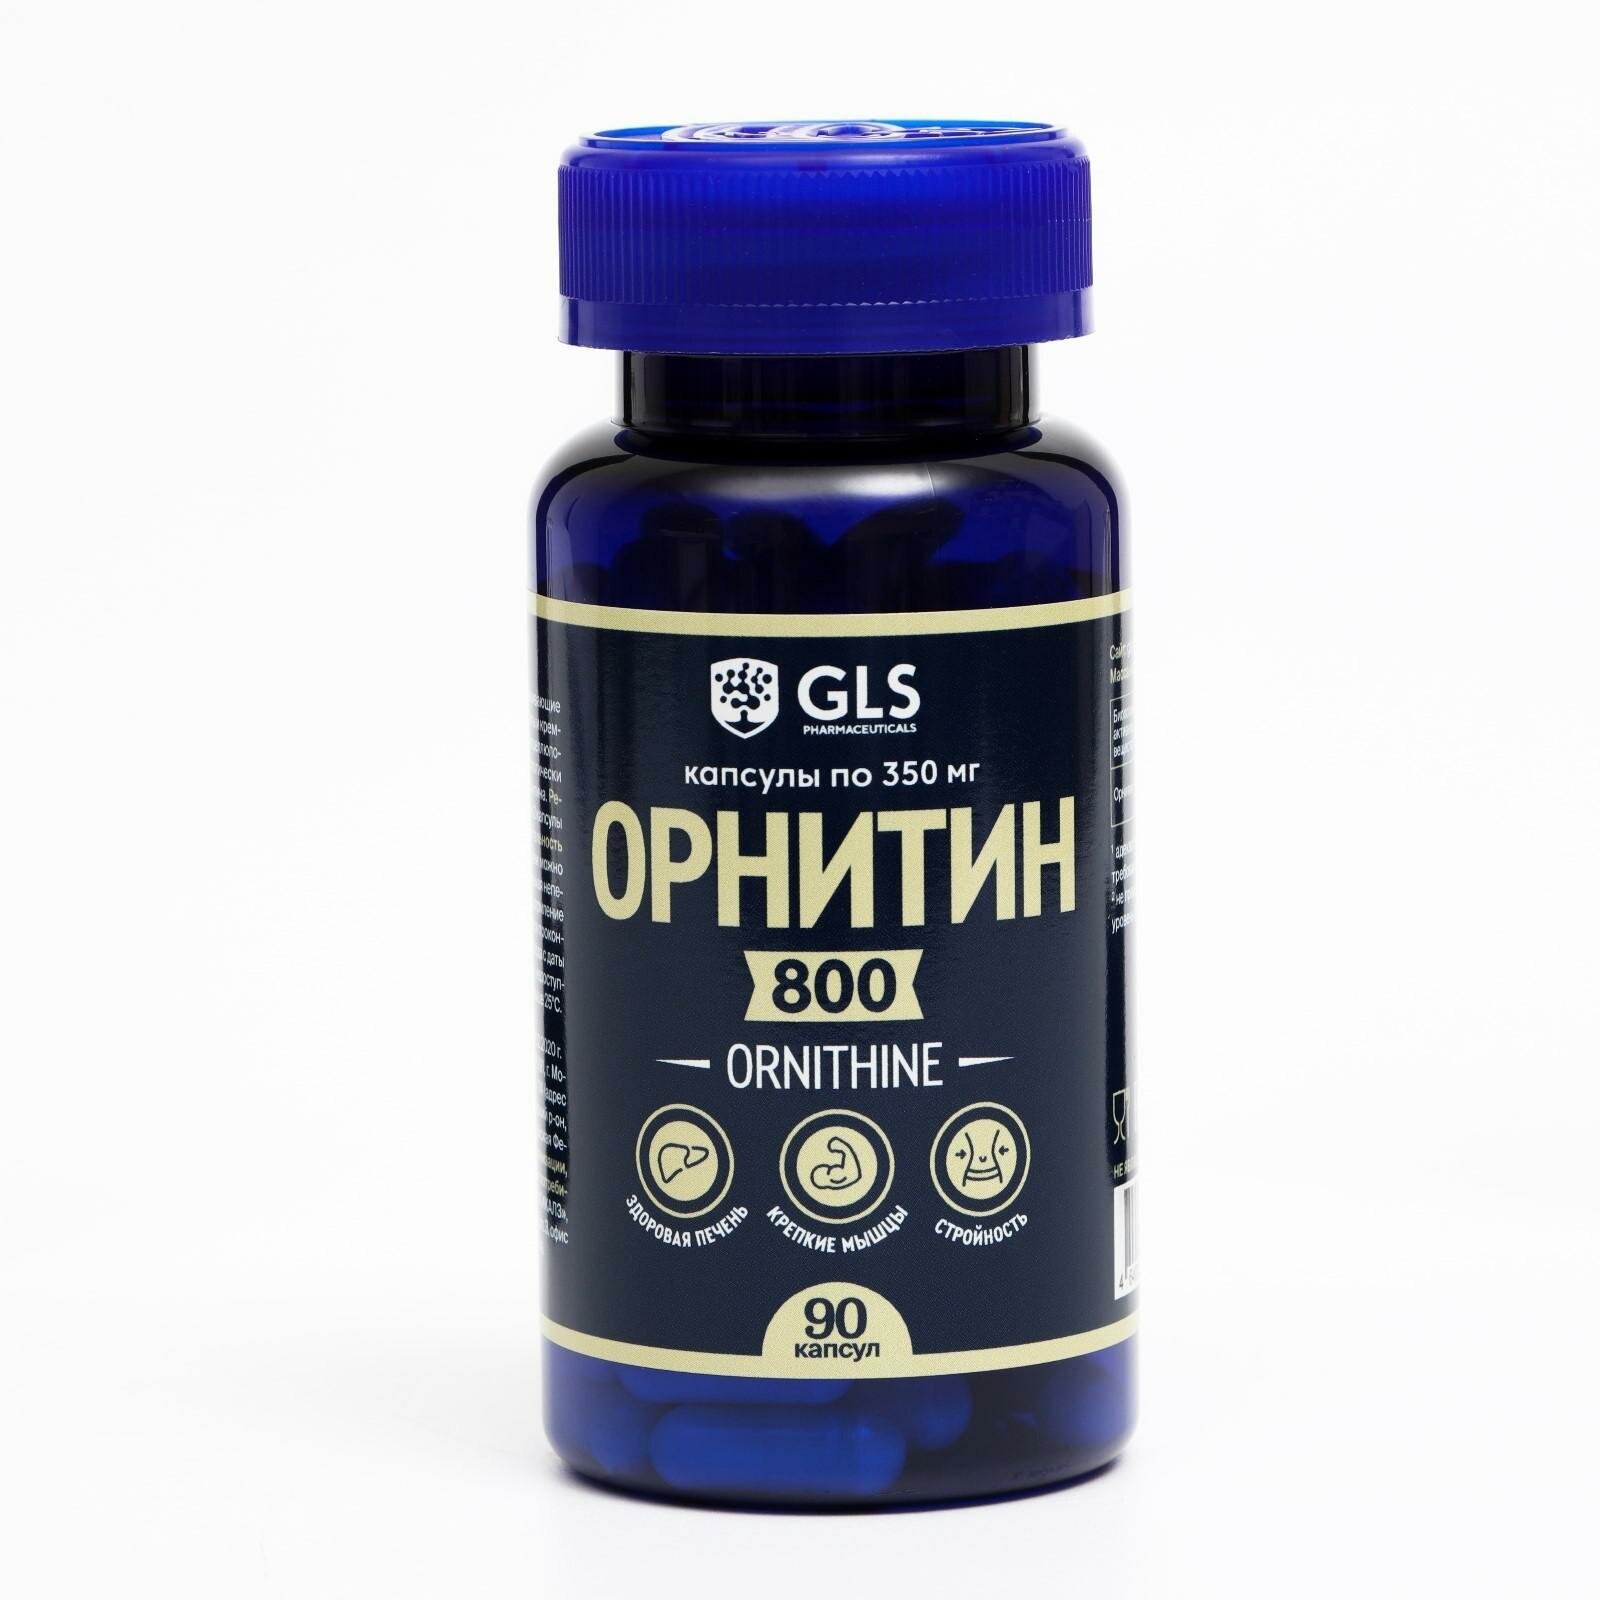 Орнитин 800 для набора мышечной массы и выносливости GLS Pharmaceuticals 90 капсул по 350 мг